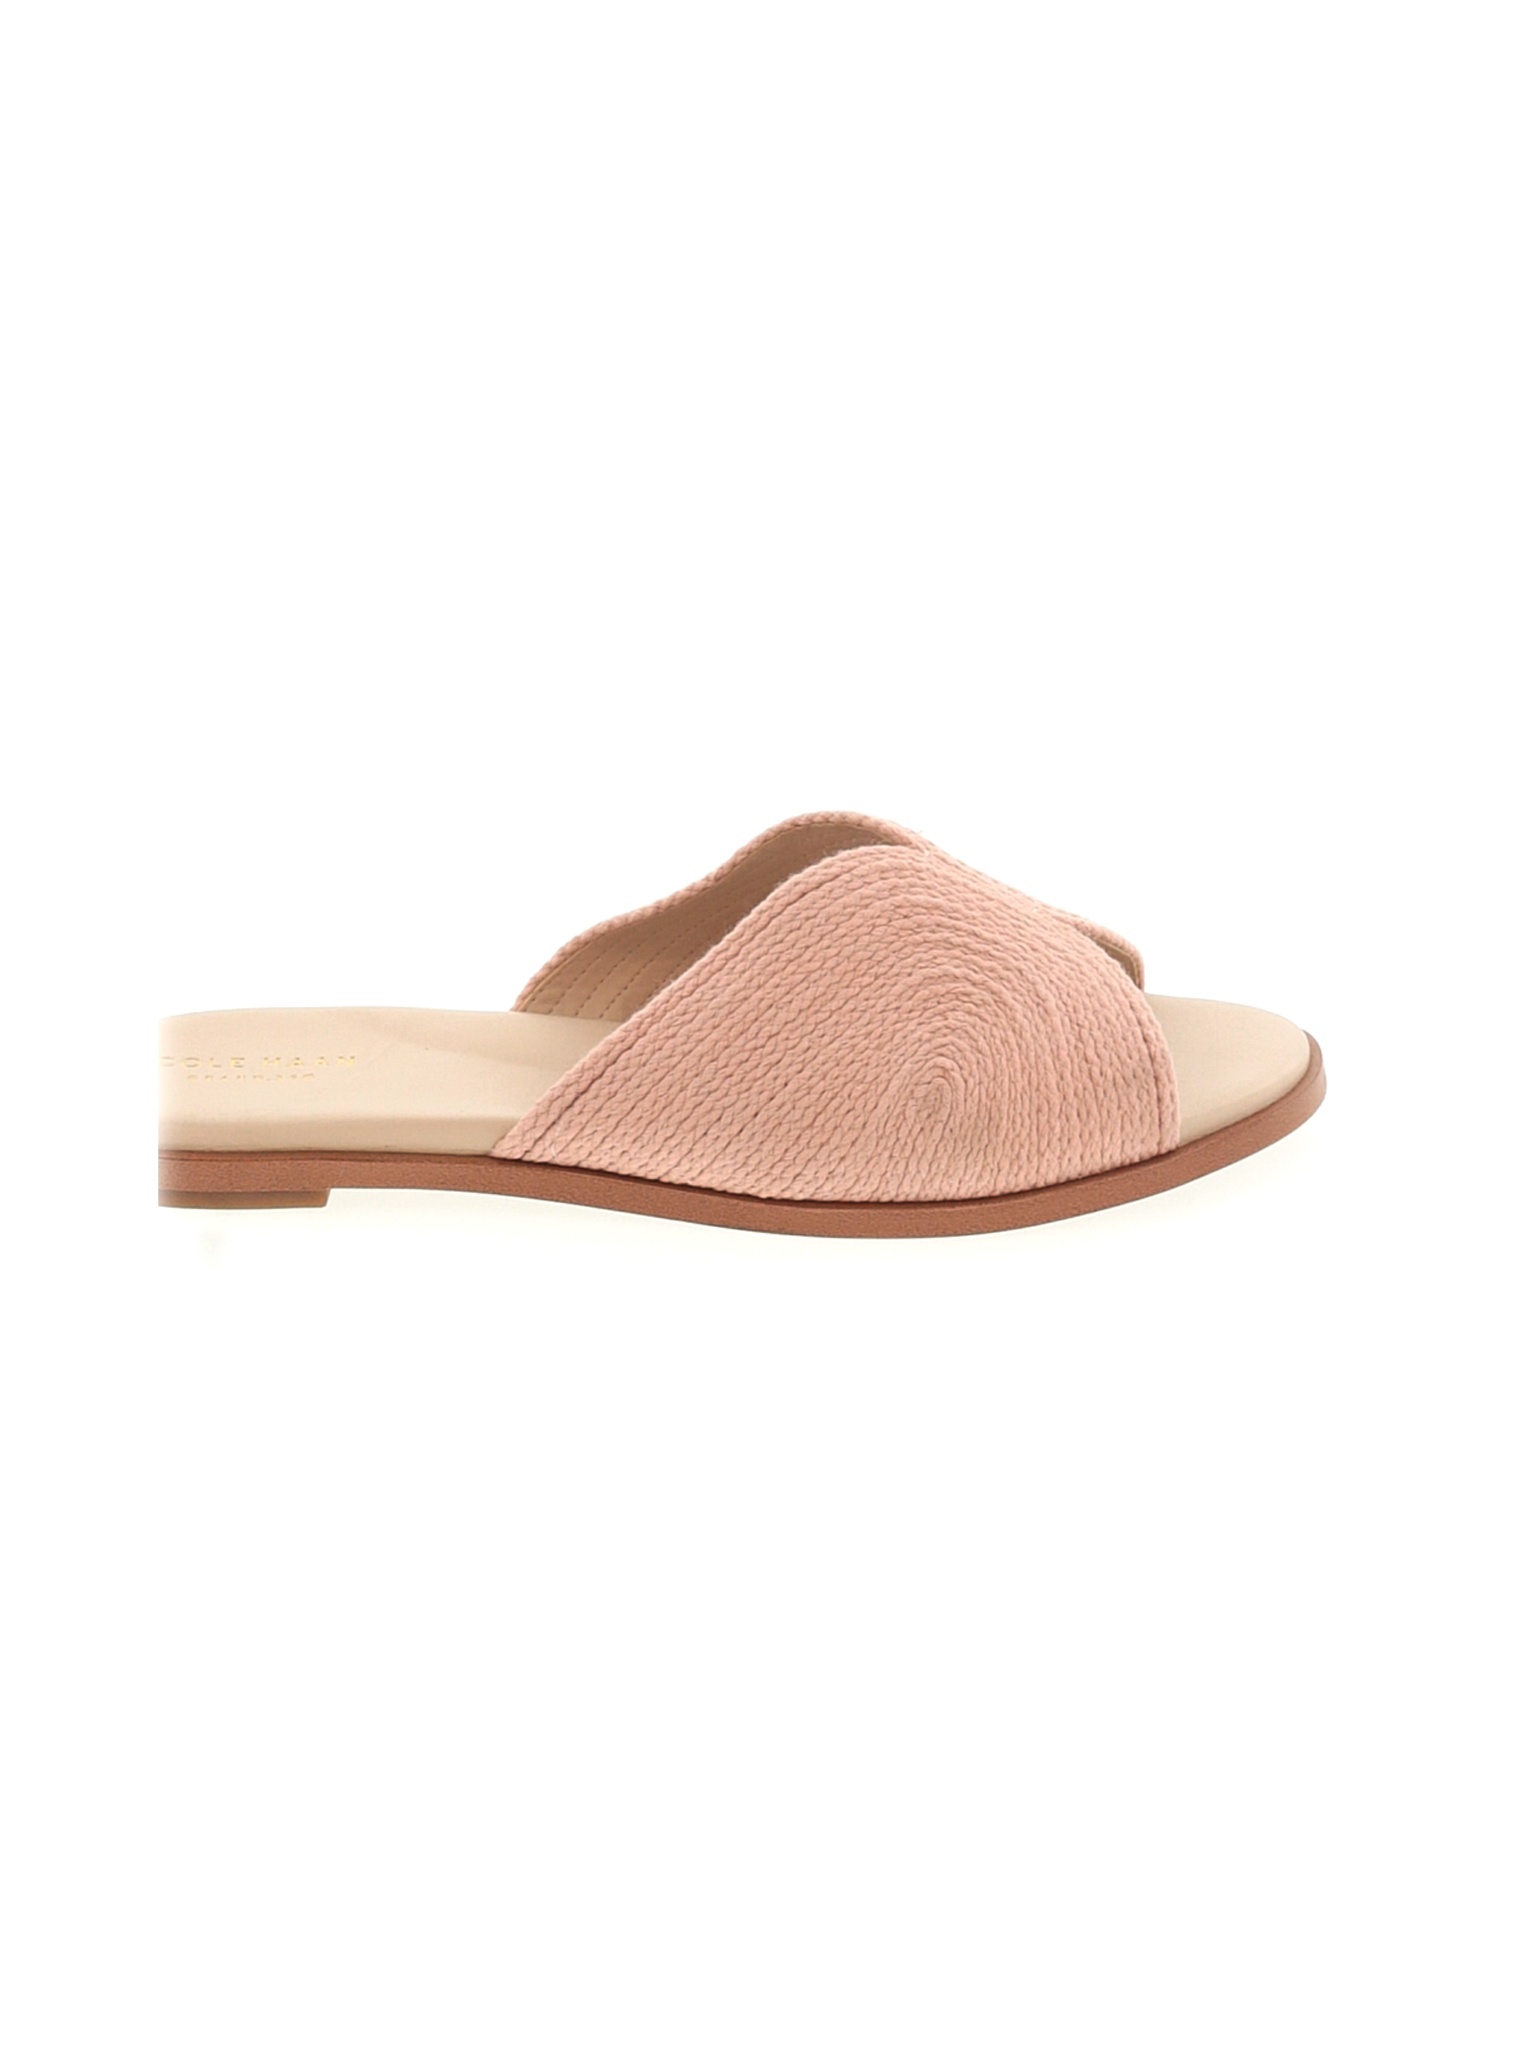 Cole Haan Women Brown Sandals US 9 | eBay